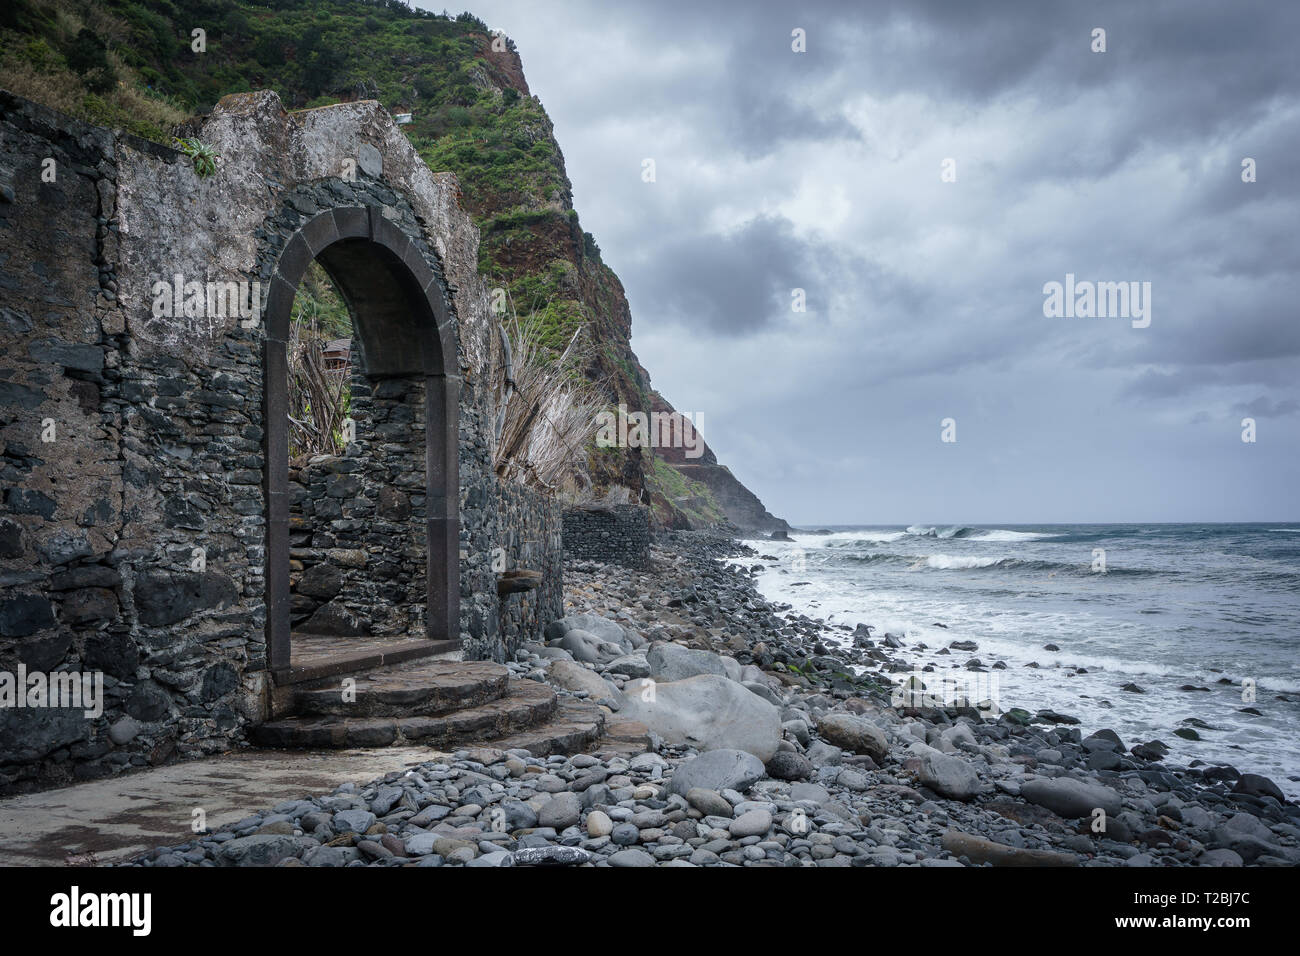 Ein verlorener Ort auf Madeira Sao Jorge, Portugal. Ein alter Hafen mit einer offenen Tür zum Ozean, an einem steinigen Strand. Sieht sehr geheimnisvolle Stockfoto